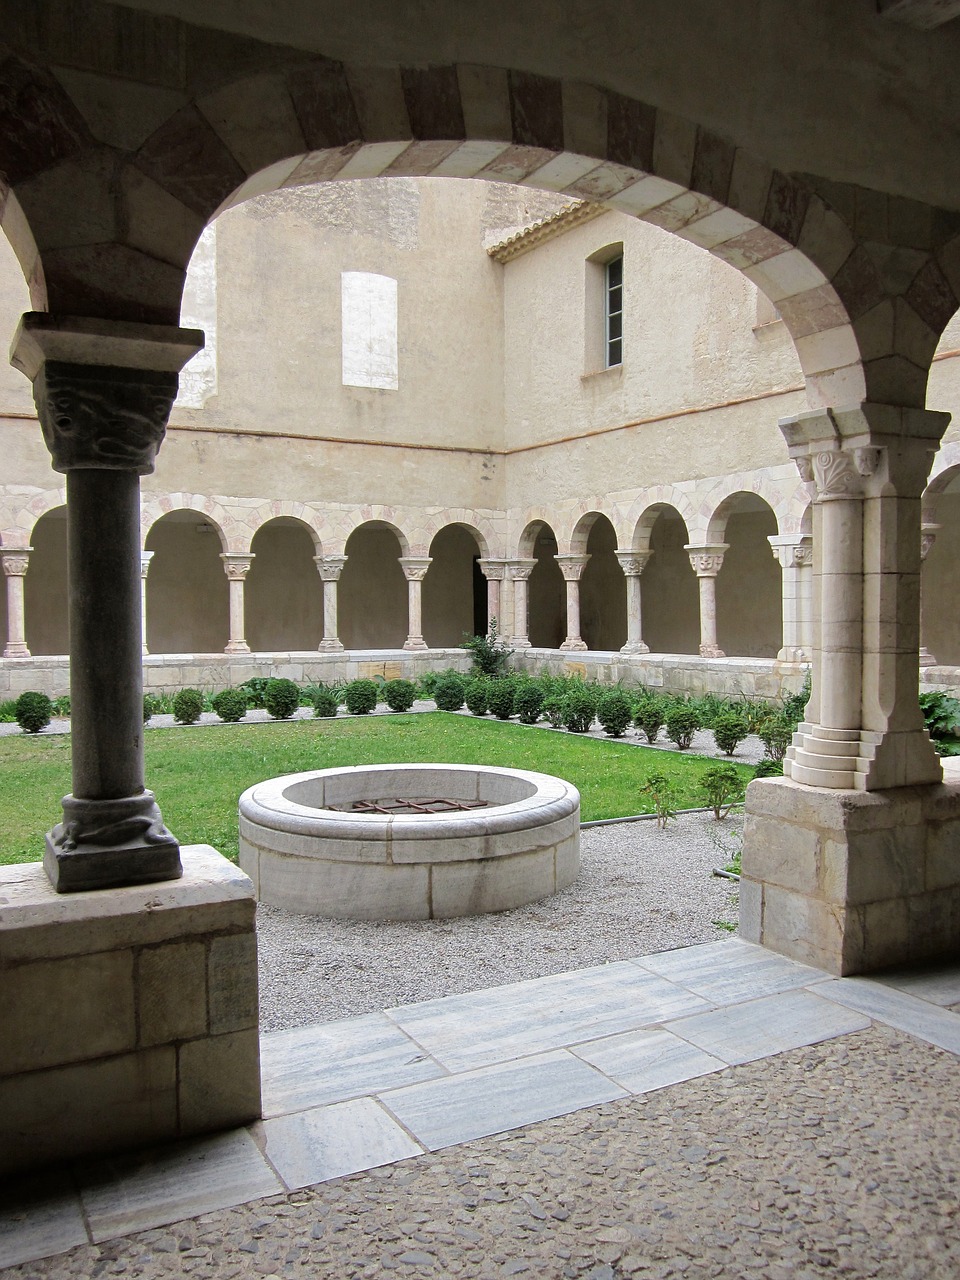 saint-génis-des-fontaines cloister abbey free photo